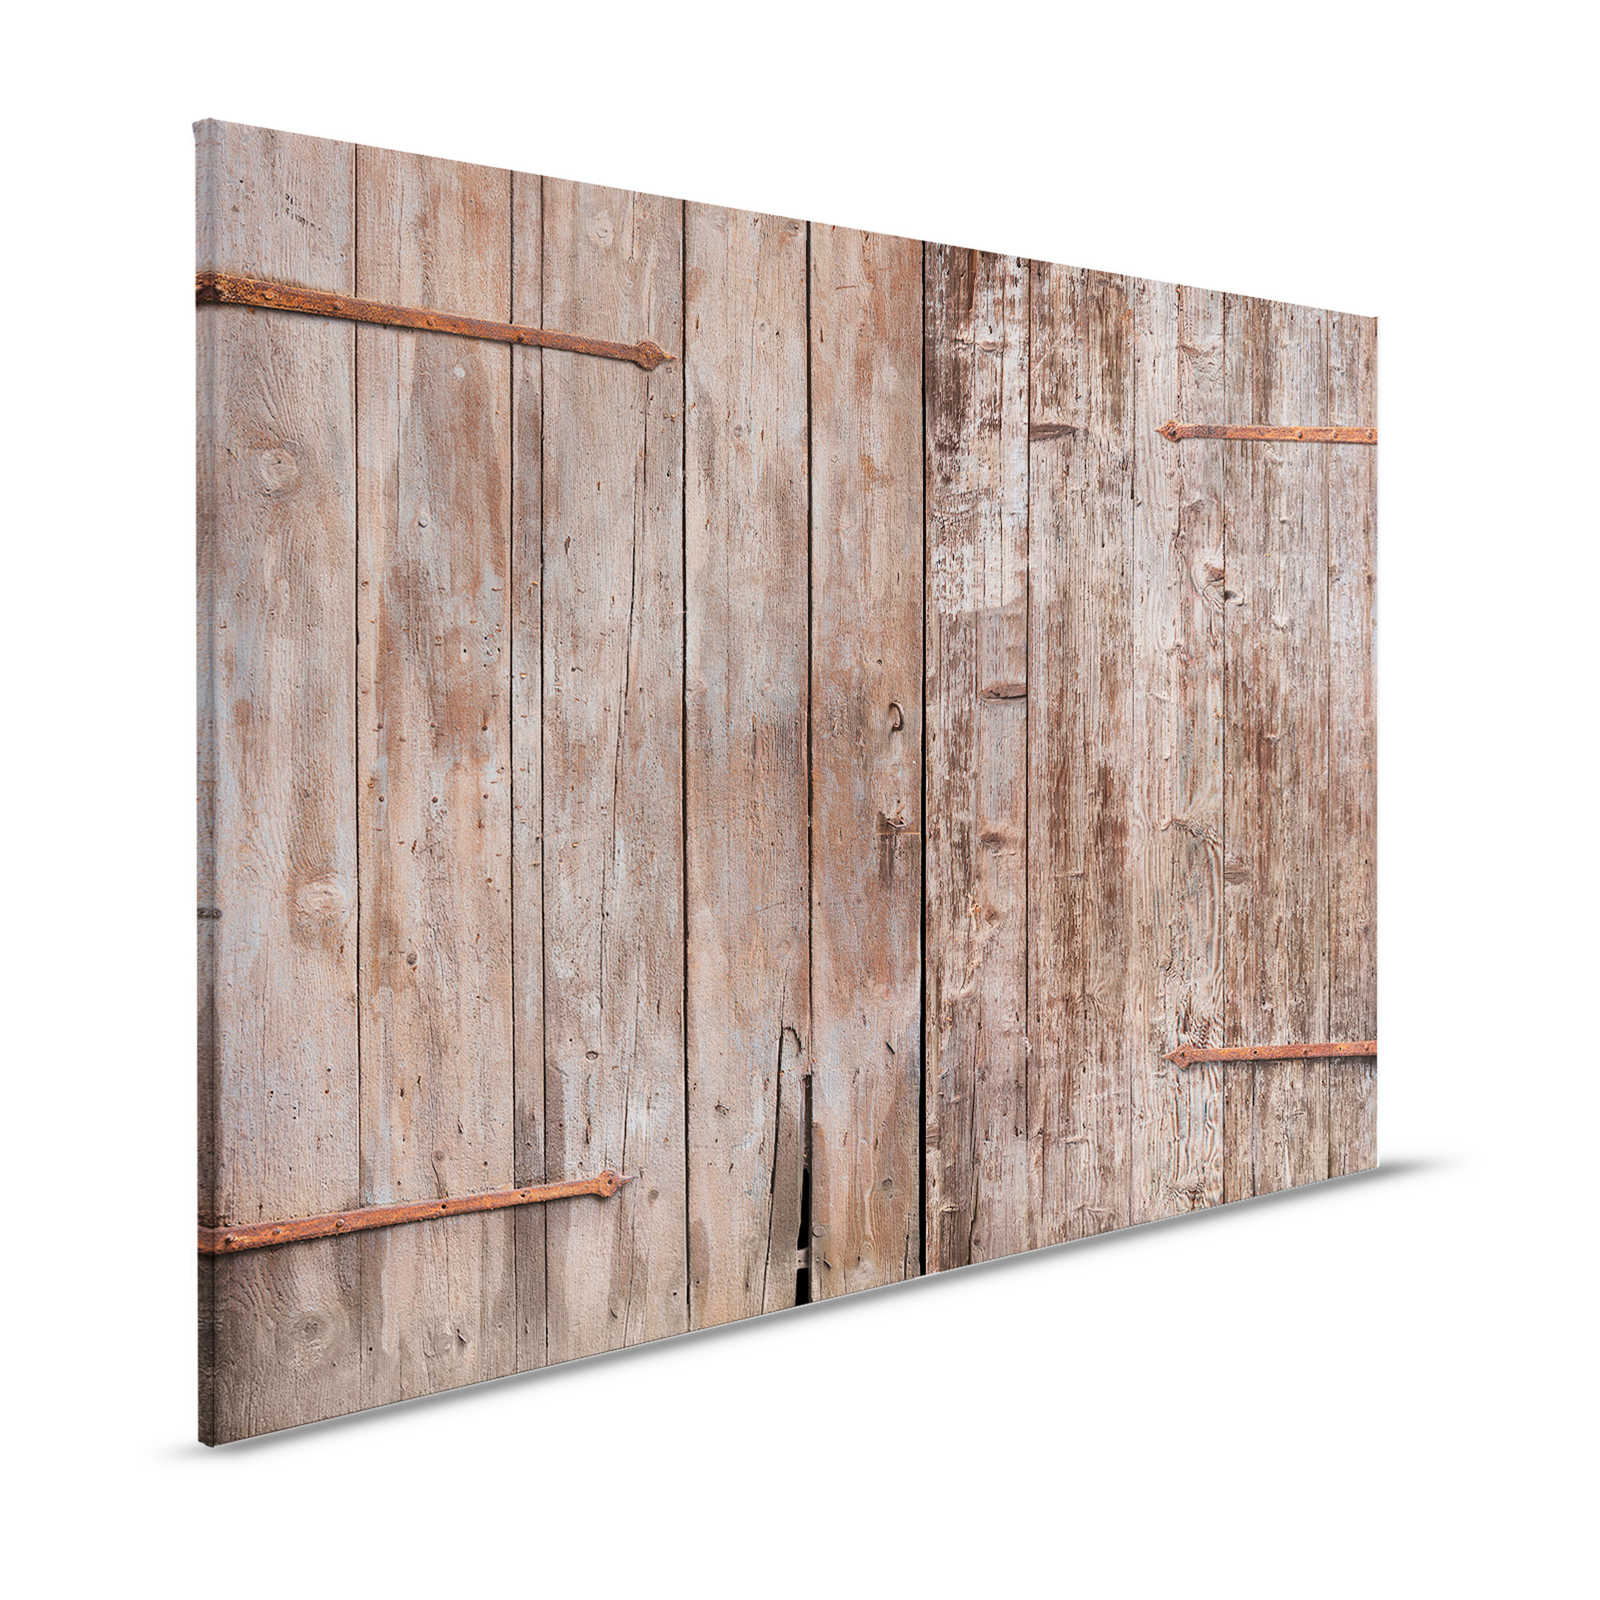 Tela di legno che dipinge la porta del fienile usata - 1,20 m x 0,80 m
